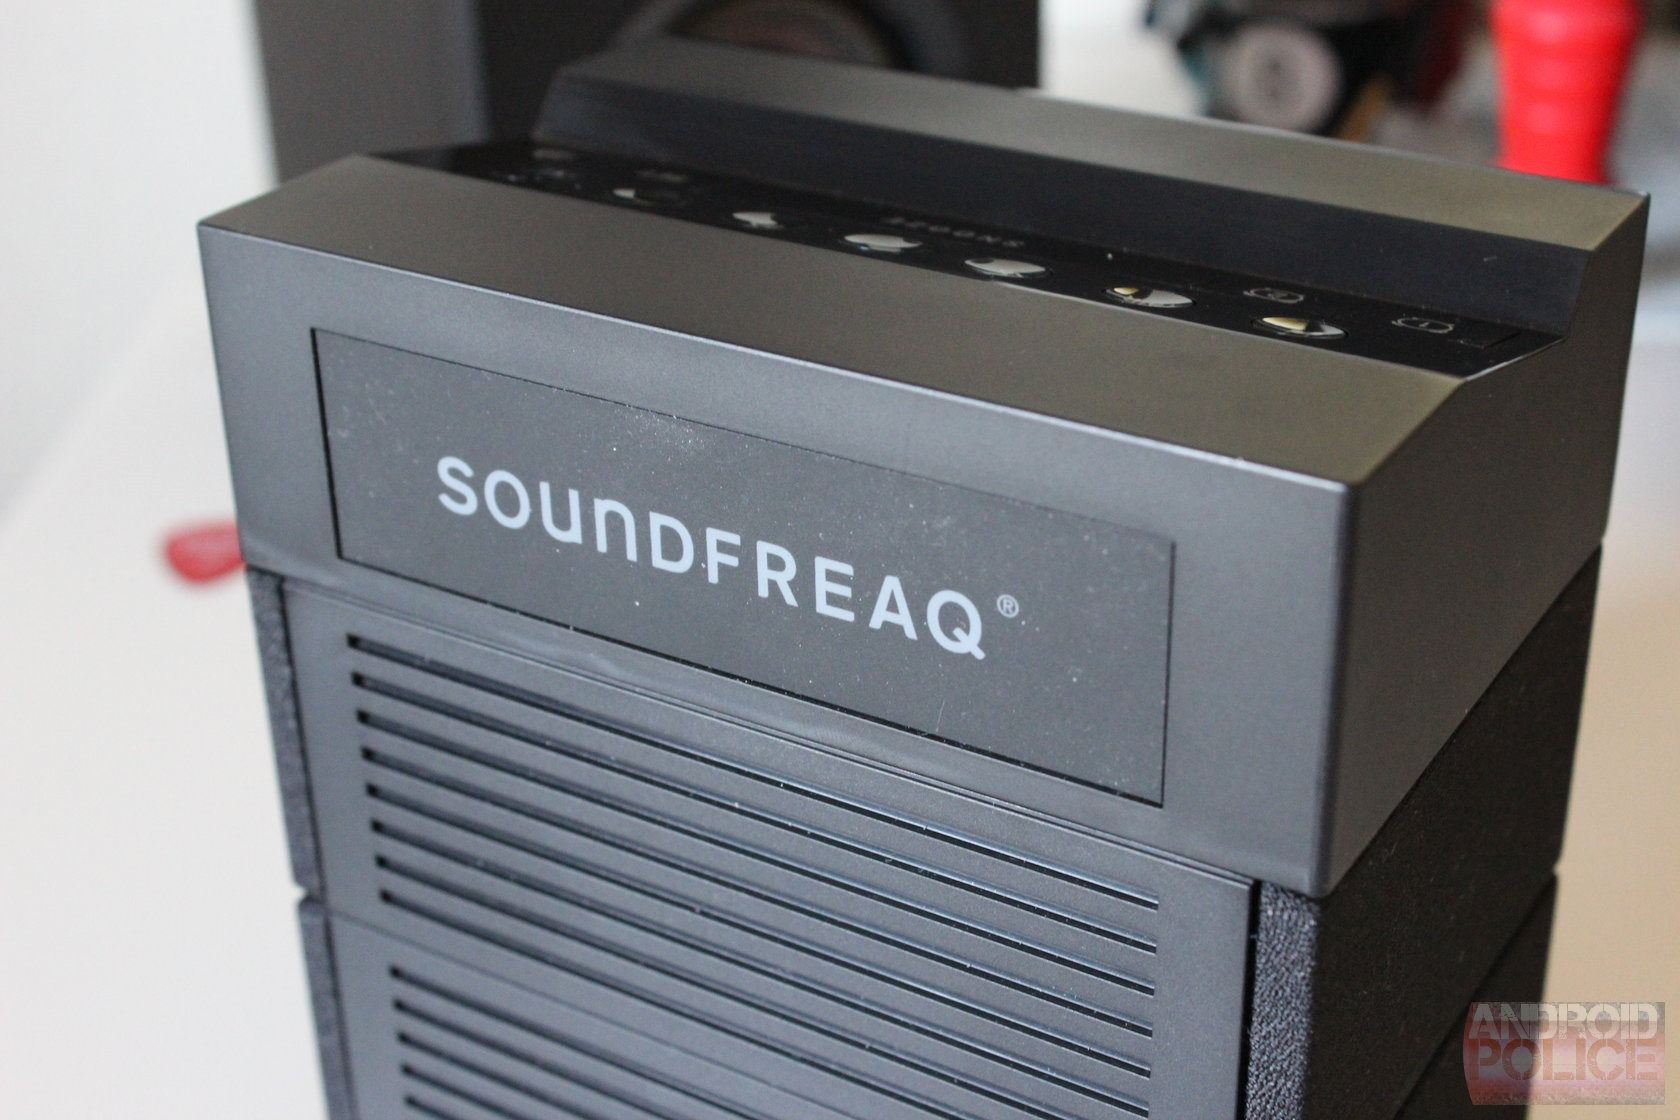 NEU Soundfreaq Sound Rise Radiowecker mit Bluetooth Audio und USB-Ladeanschluss 